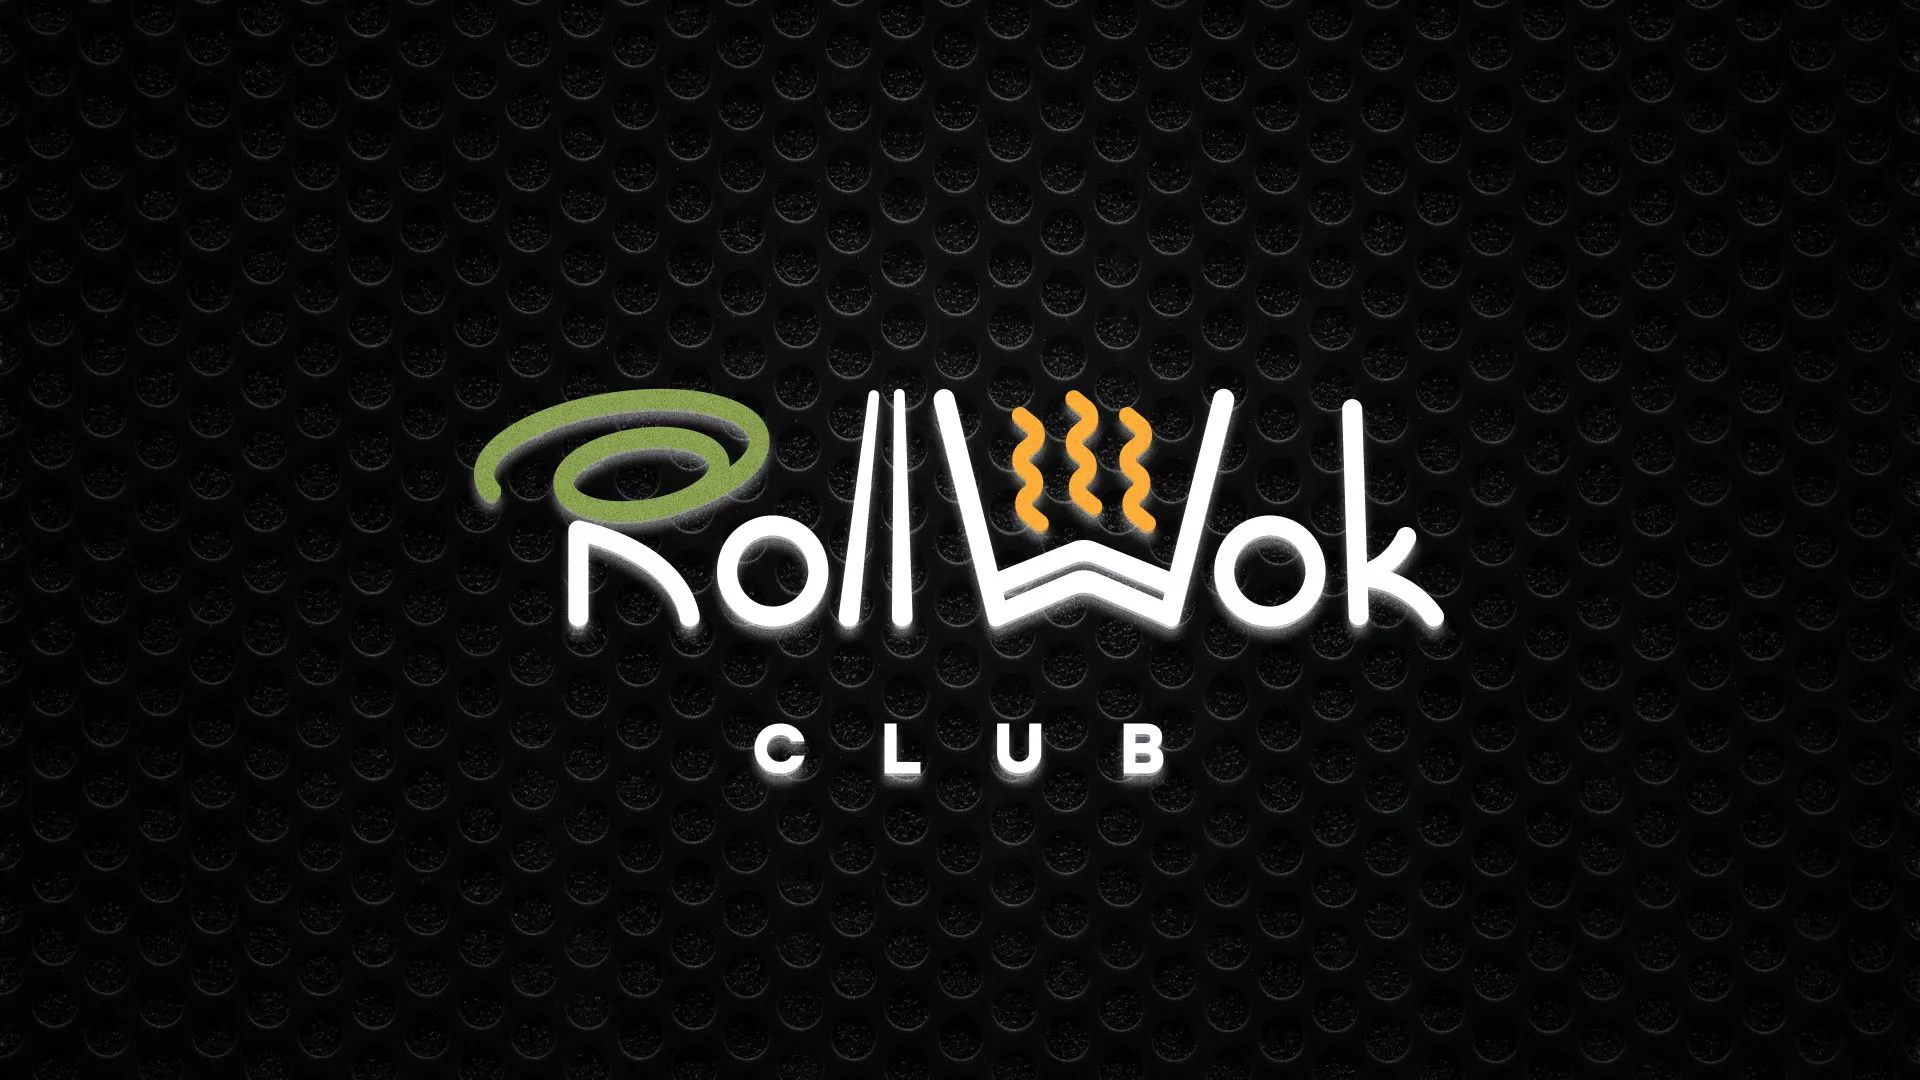 Брендирование торговых точек суши-бара «Roll Wok Club» в Навашино